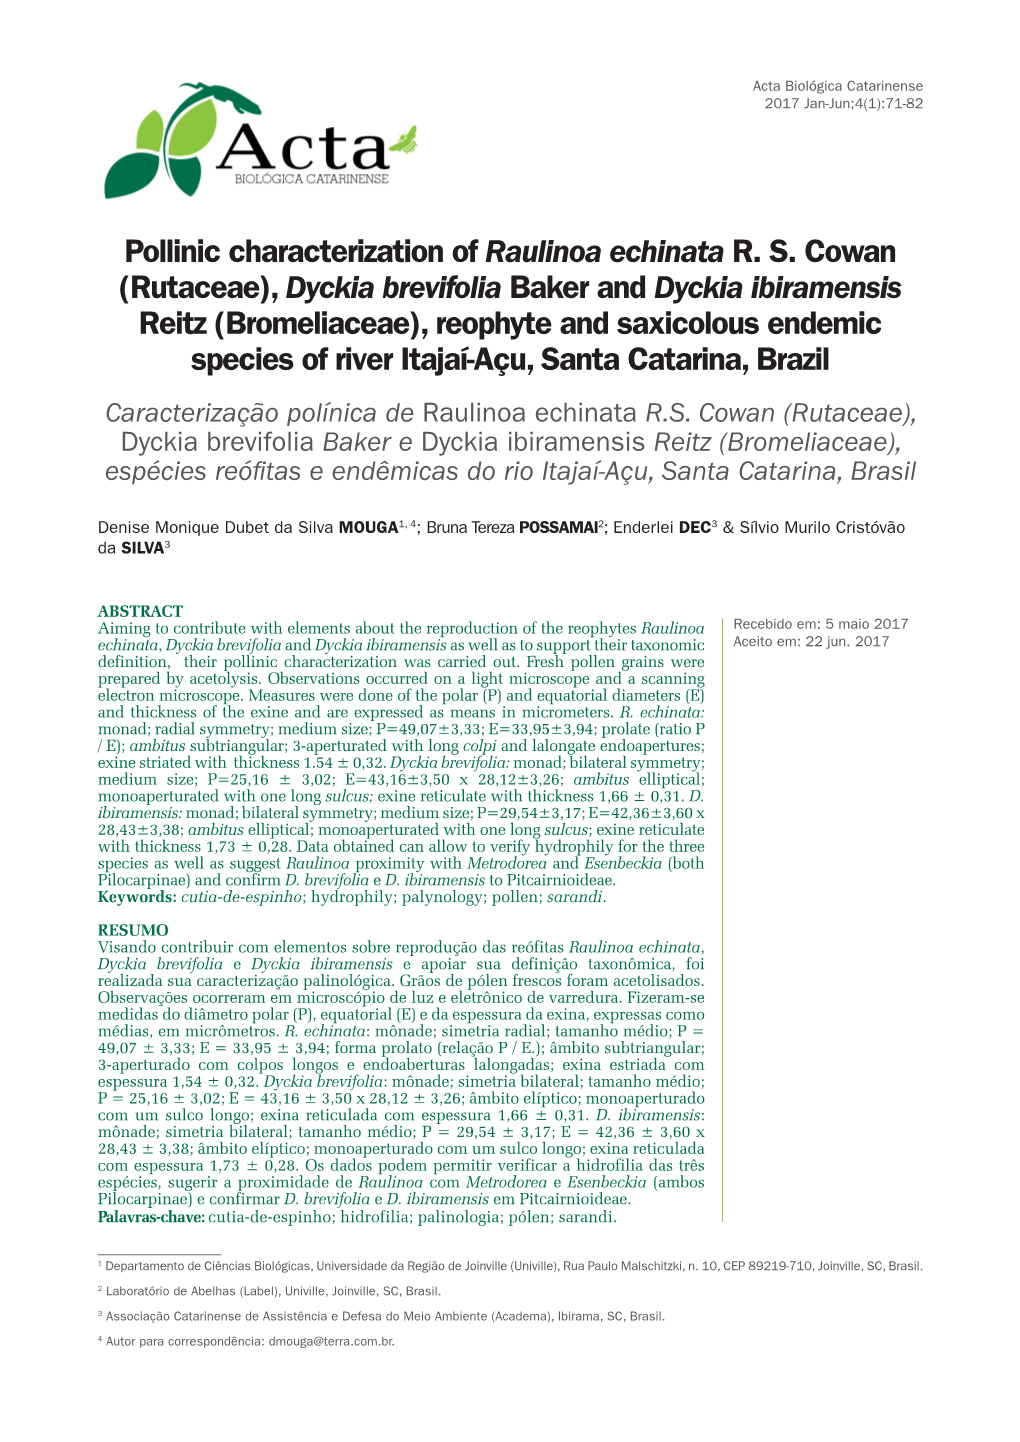 Pollinic Characterization of Raulinoa Echinata RS Cowan (Rutaceae)